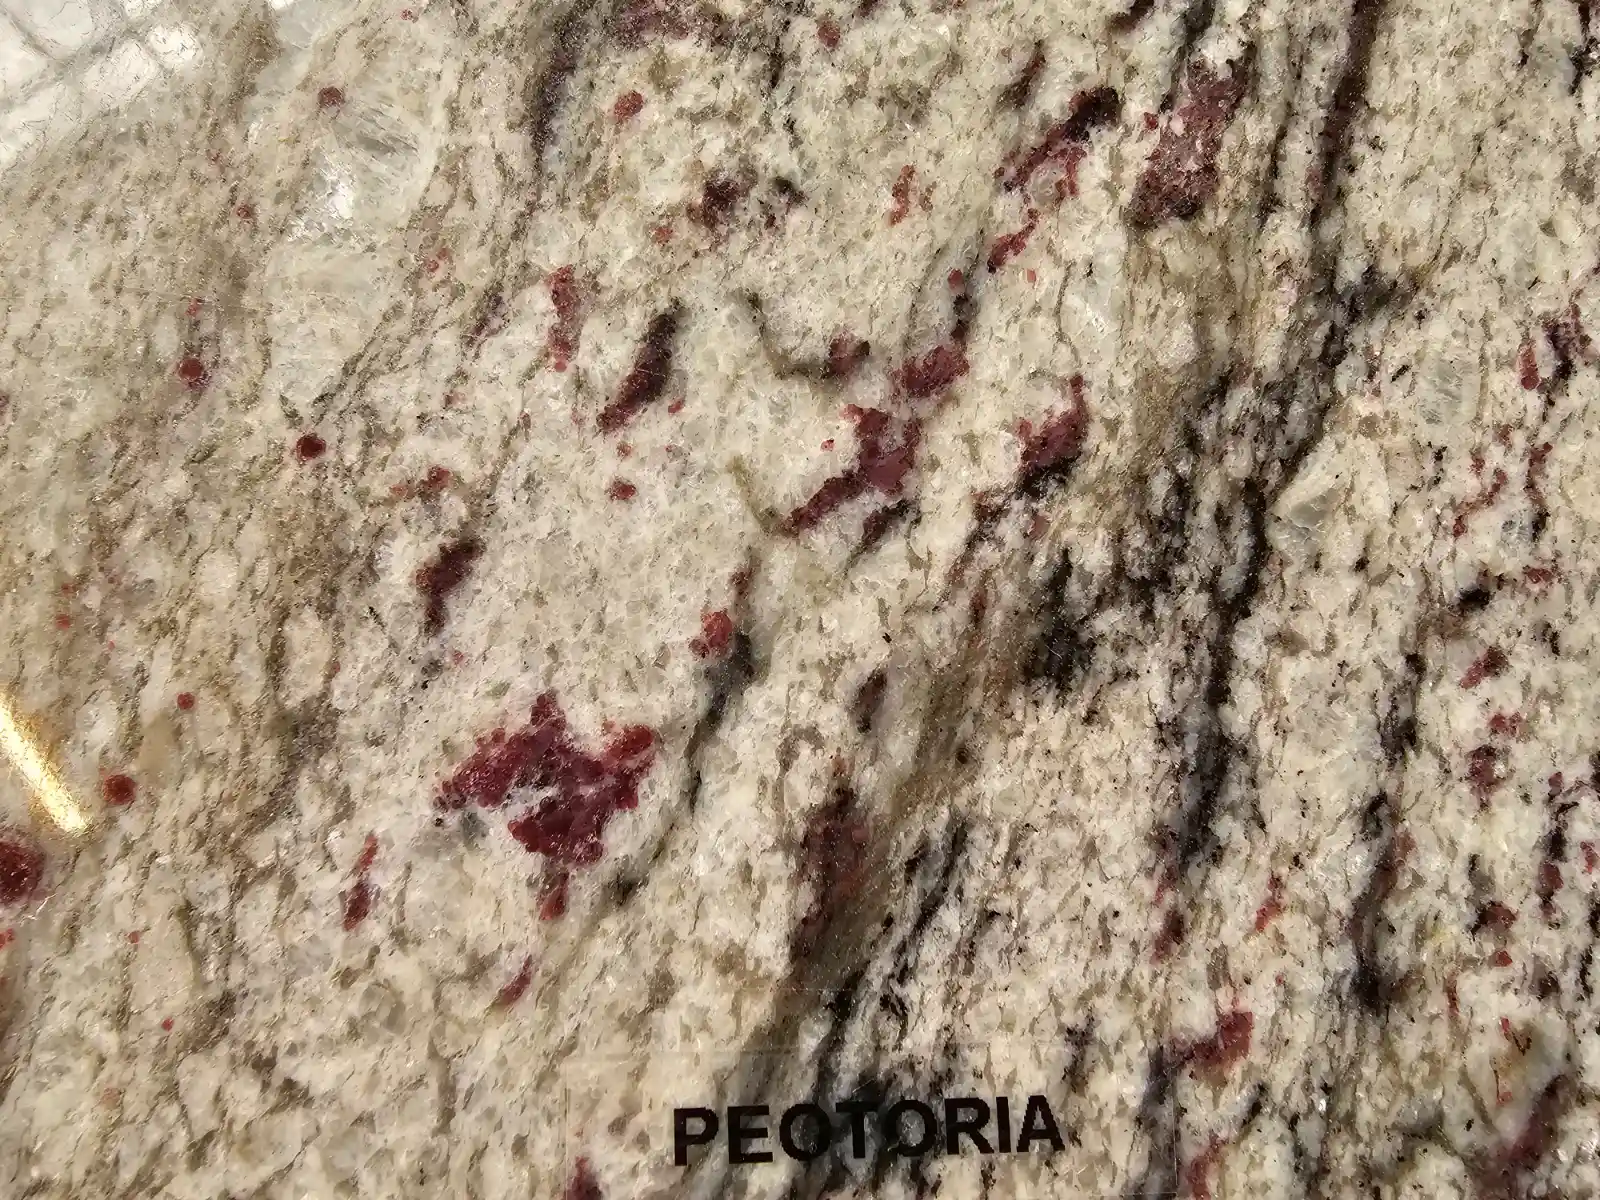 Petoria granite countertop style and material